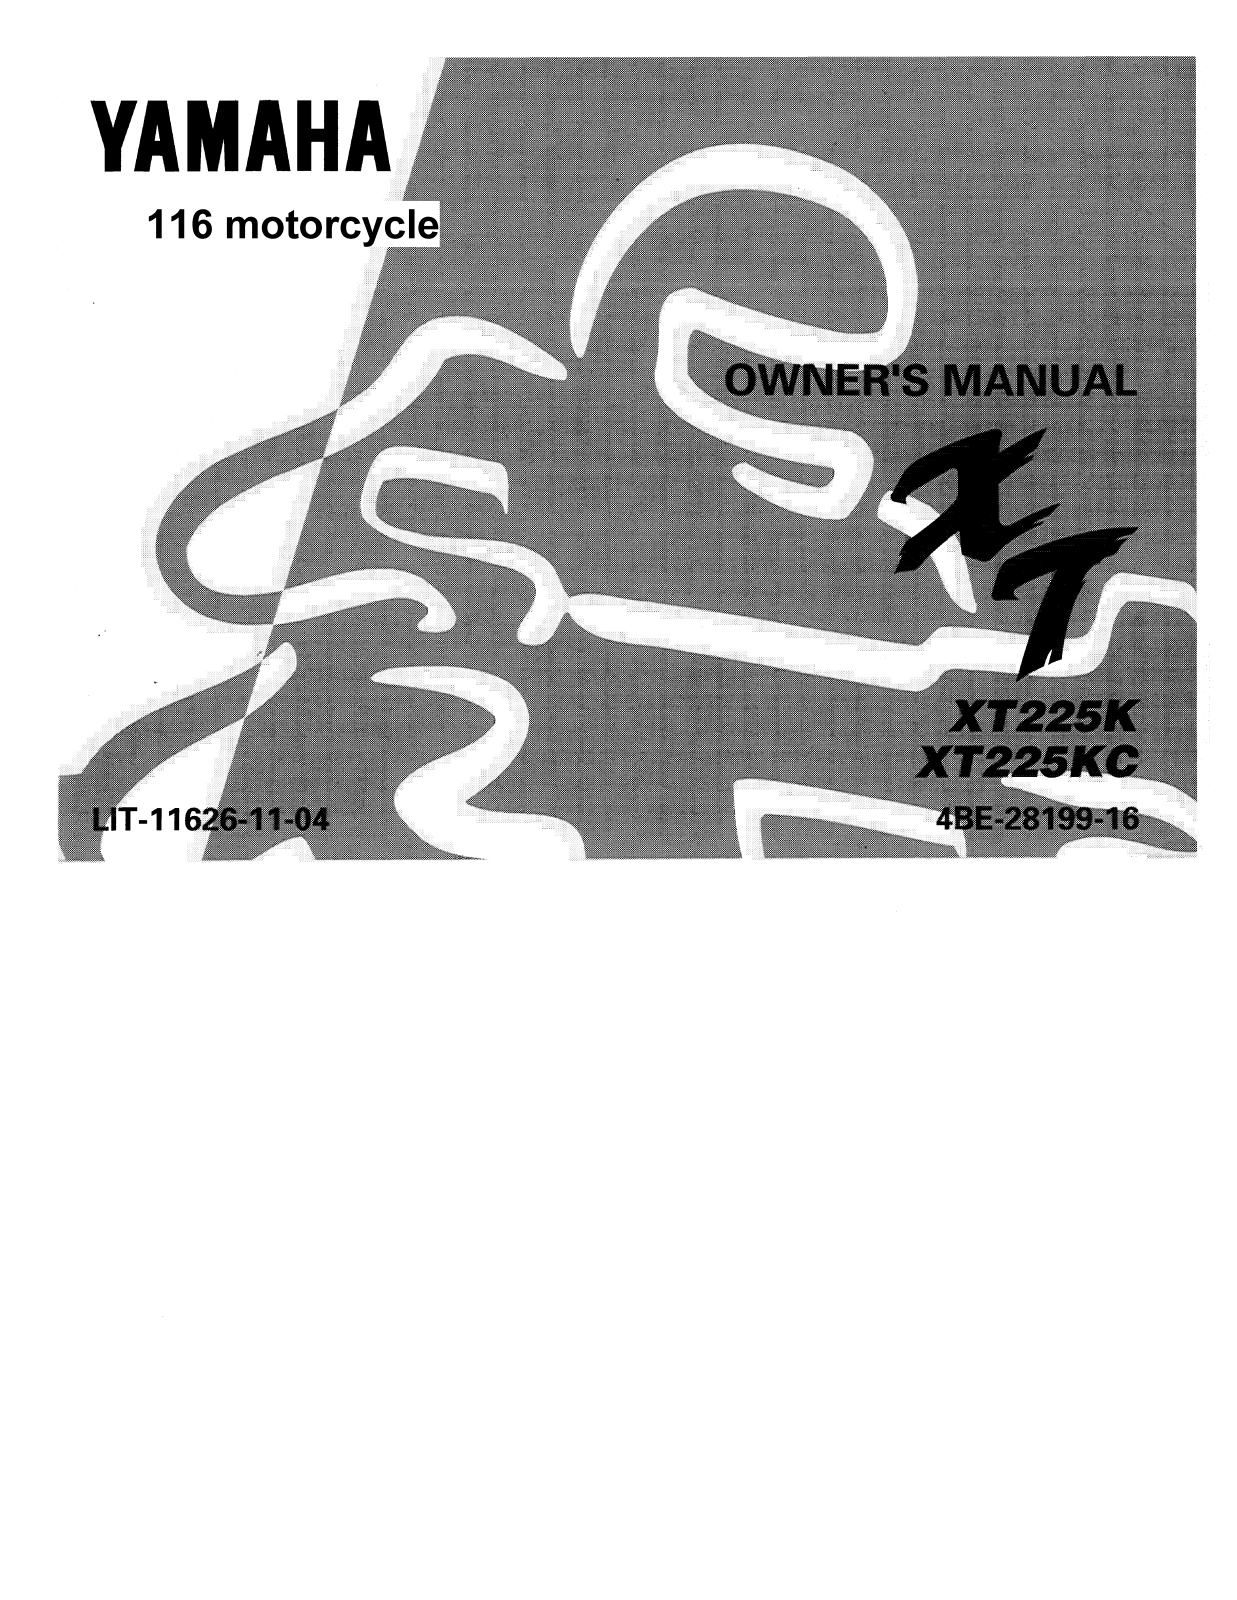 Yamaha XT225 User Manual